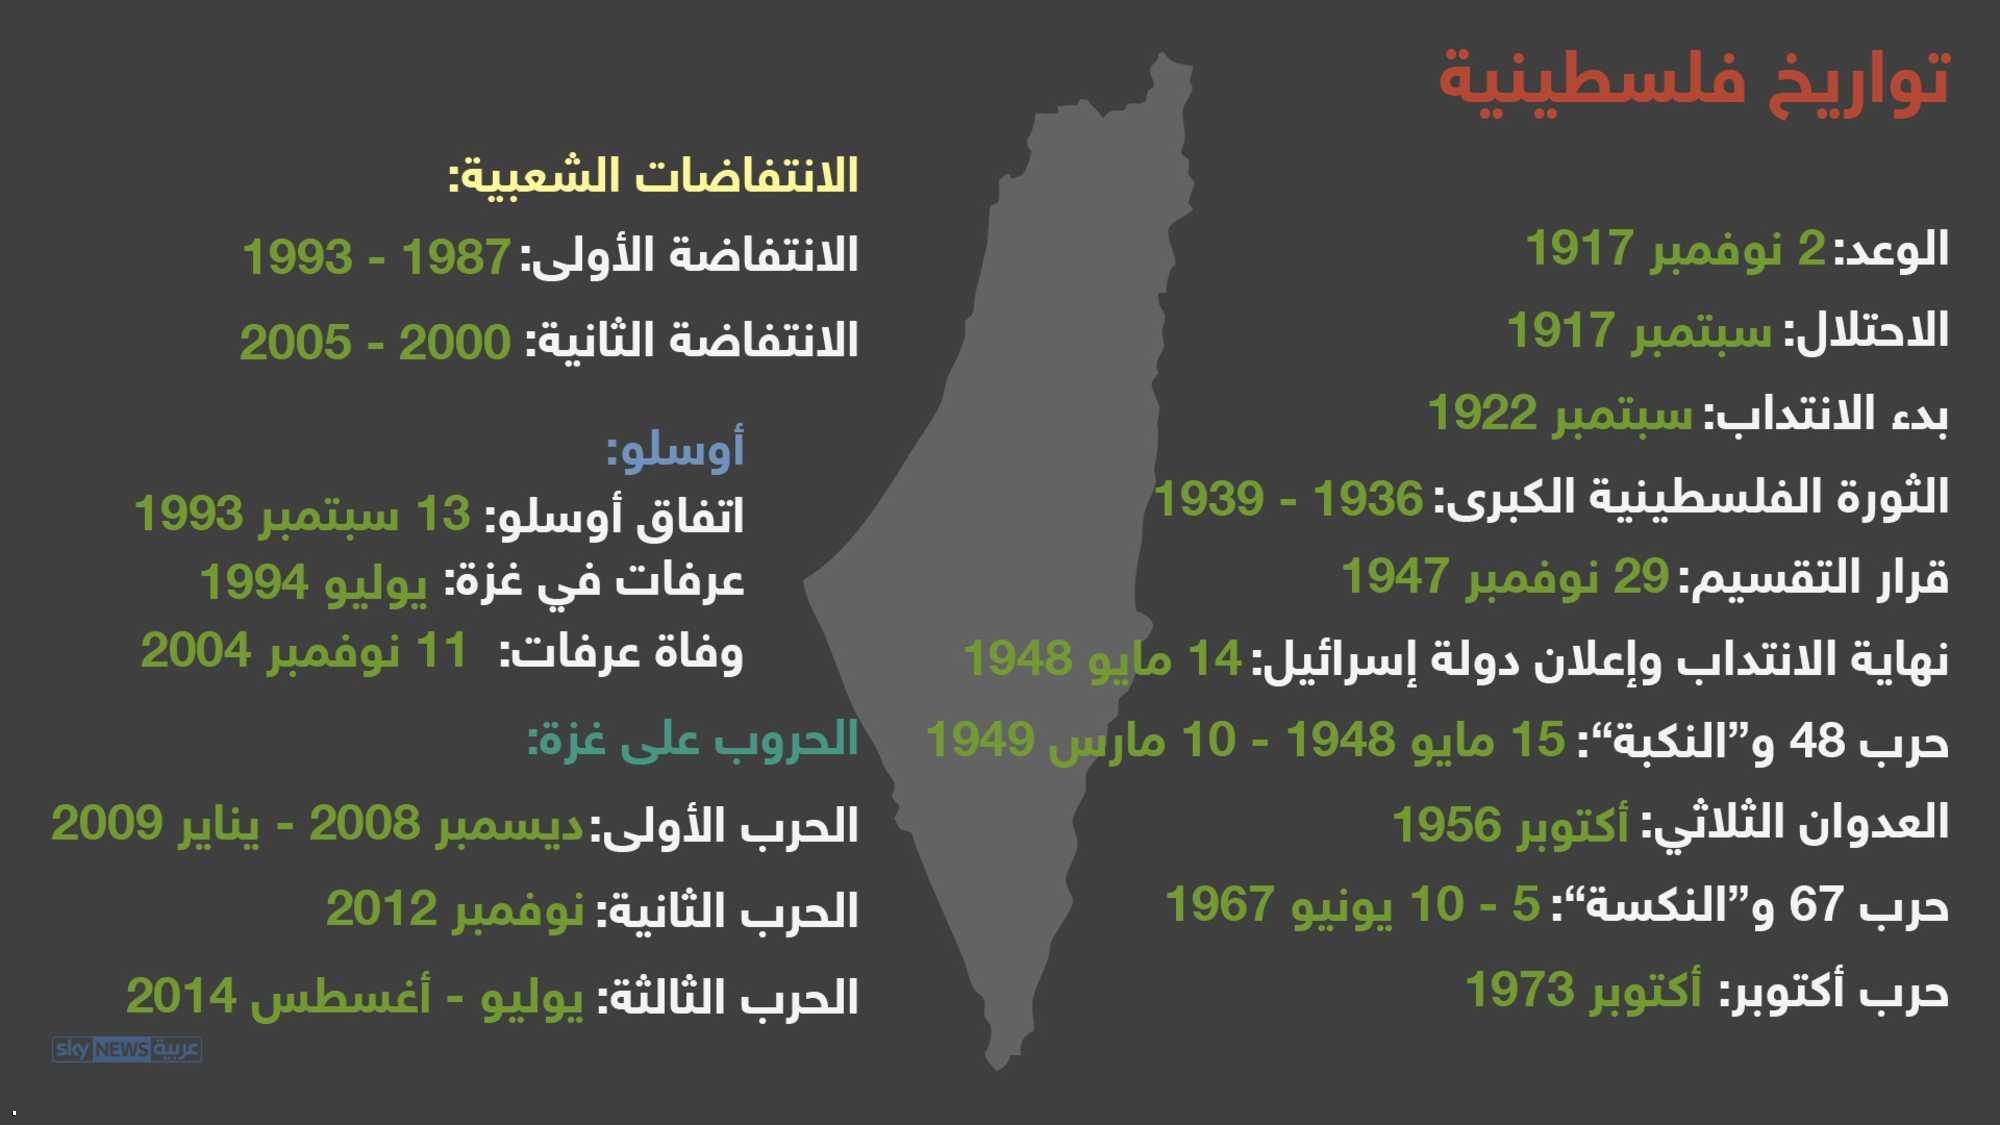 تواريخ هامة فى القضية الفلسطينية